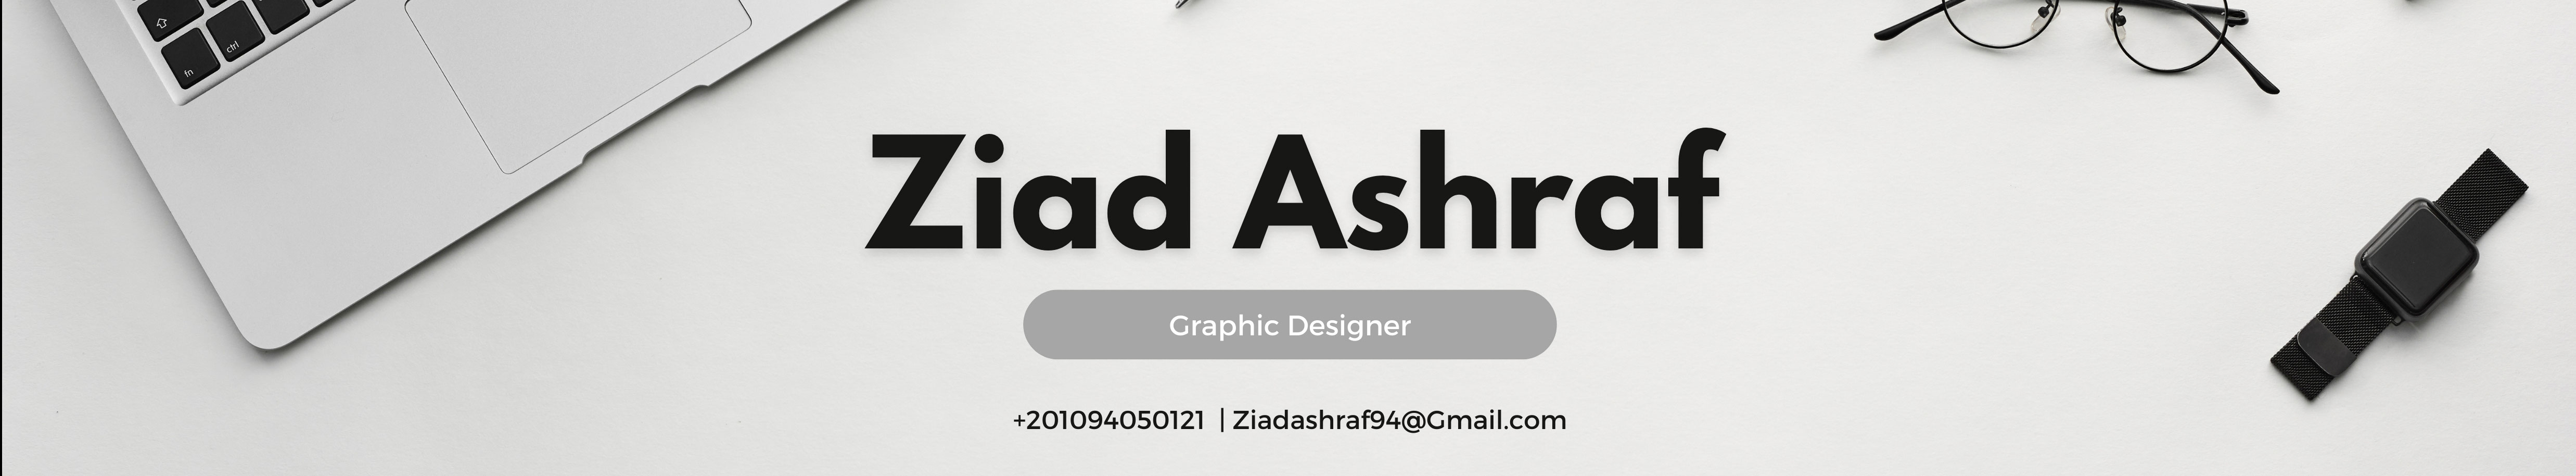 Ziad Ashraf's profile banner